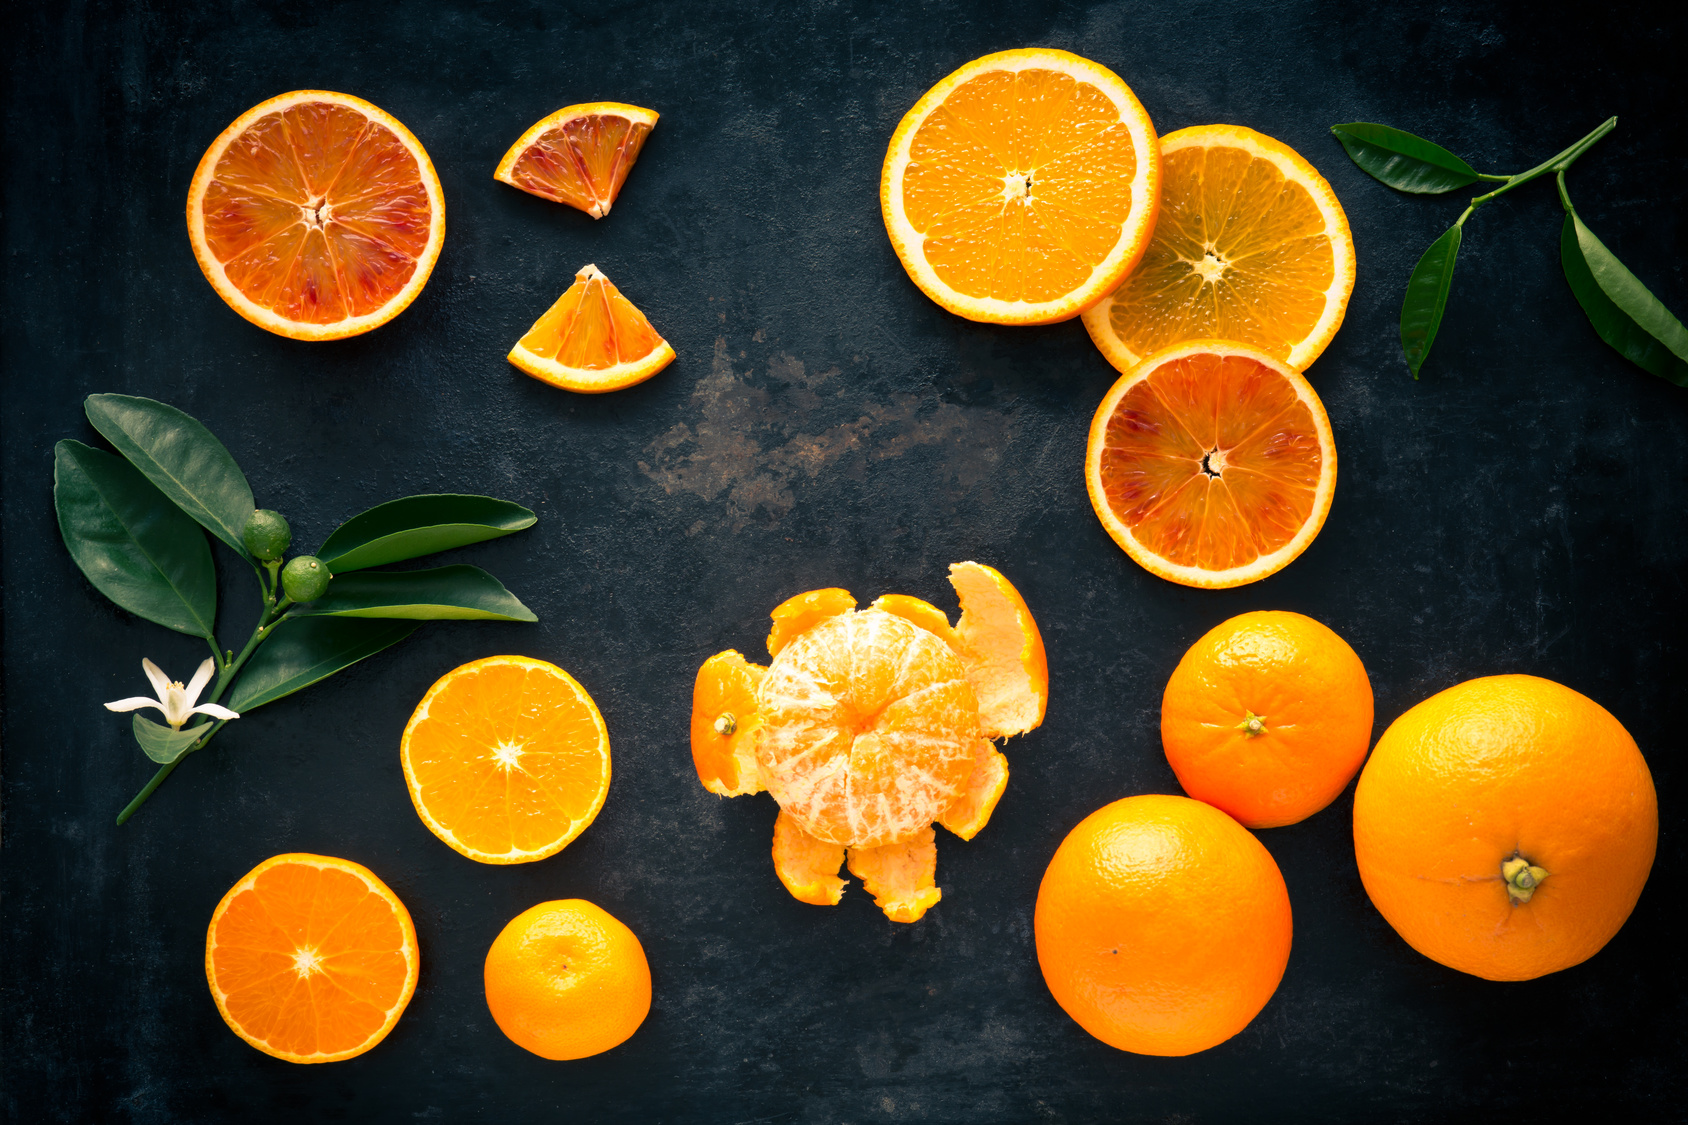 L'orange est un agrume à consommer en hiver pour sa richesse en vitamine C. © Melima, Fotolia